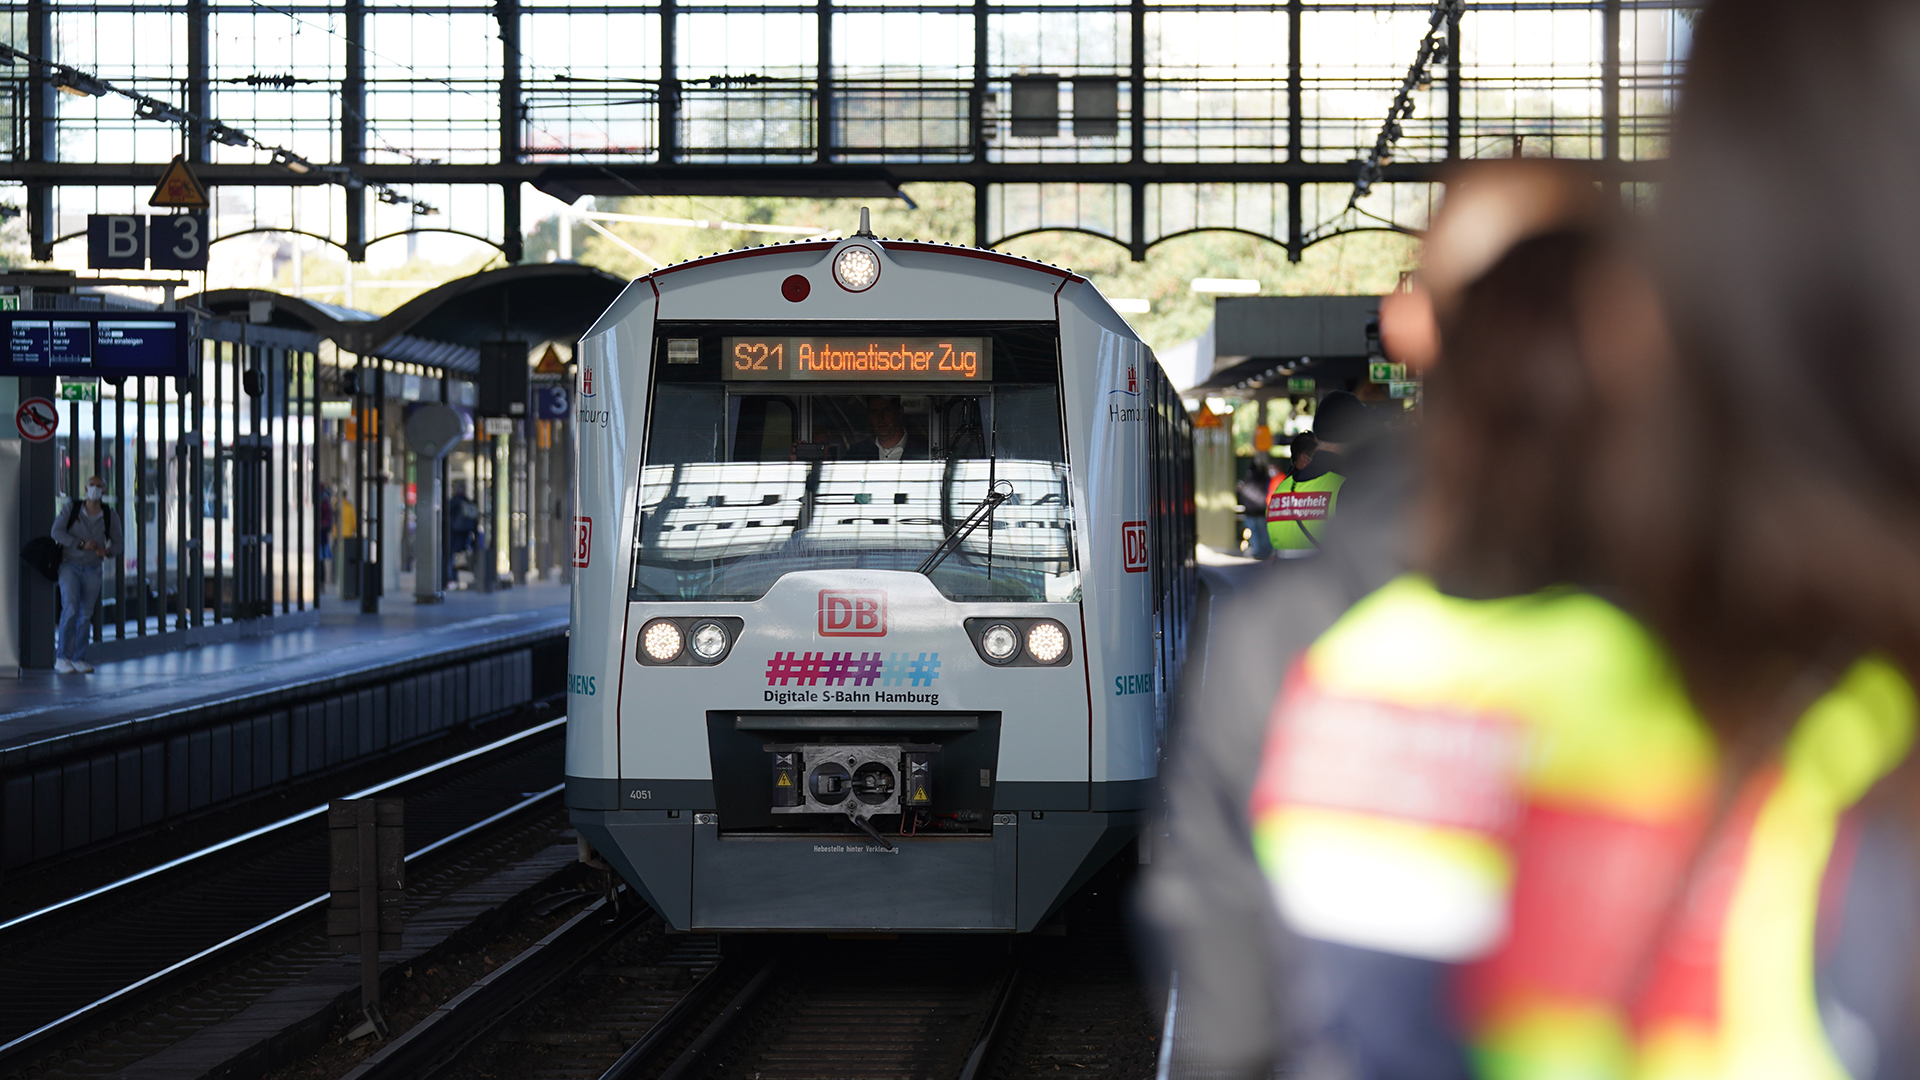 Die S-Bahn S21 fährt zur Premierenfahrt der digitalen, automatisch fahrenden S-Bahn Hamburg in den Bahnhof Dammtor ein. | dpa